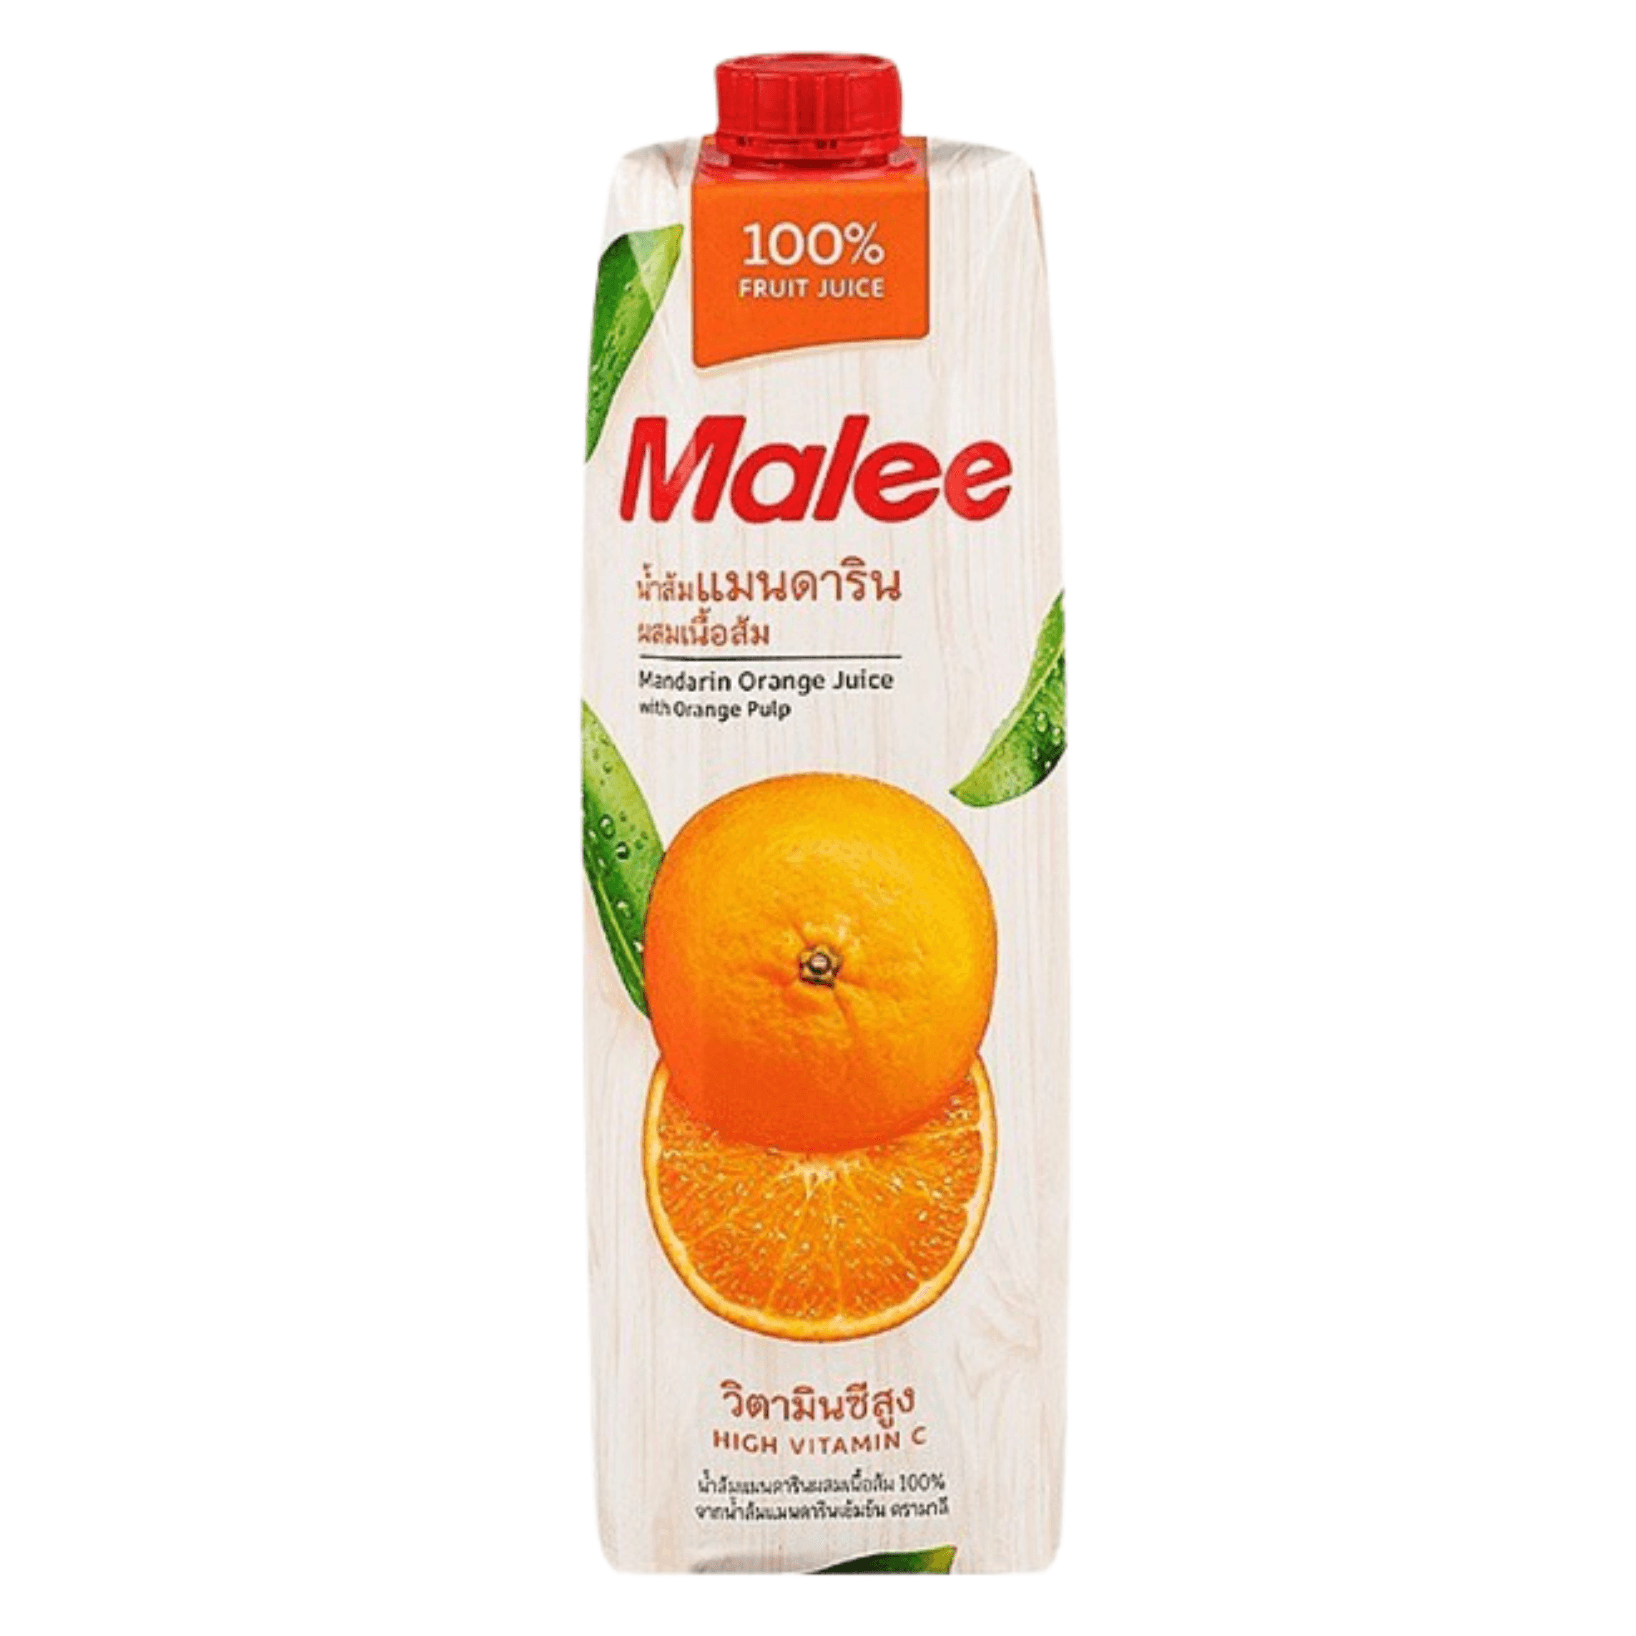 Malee Uhl Orange Juice * 1L